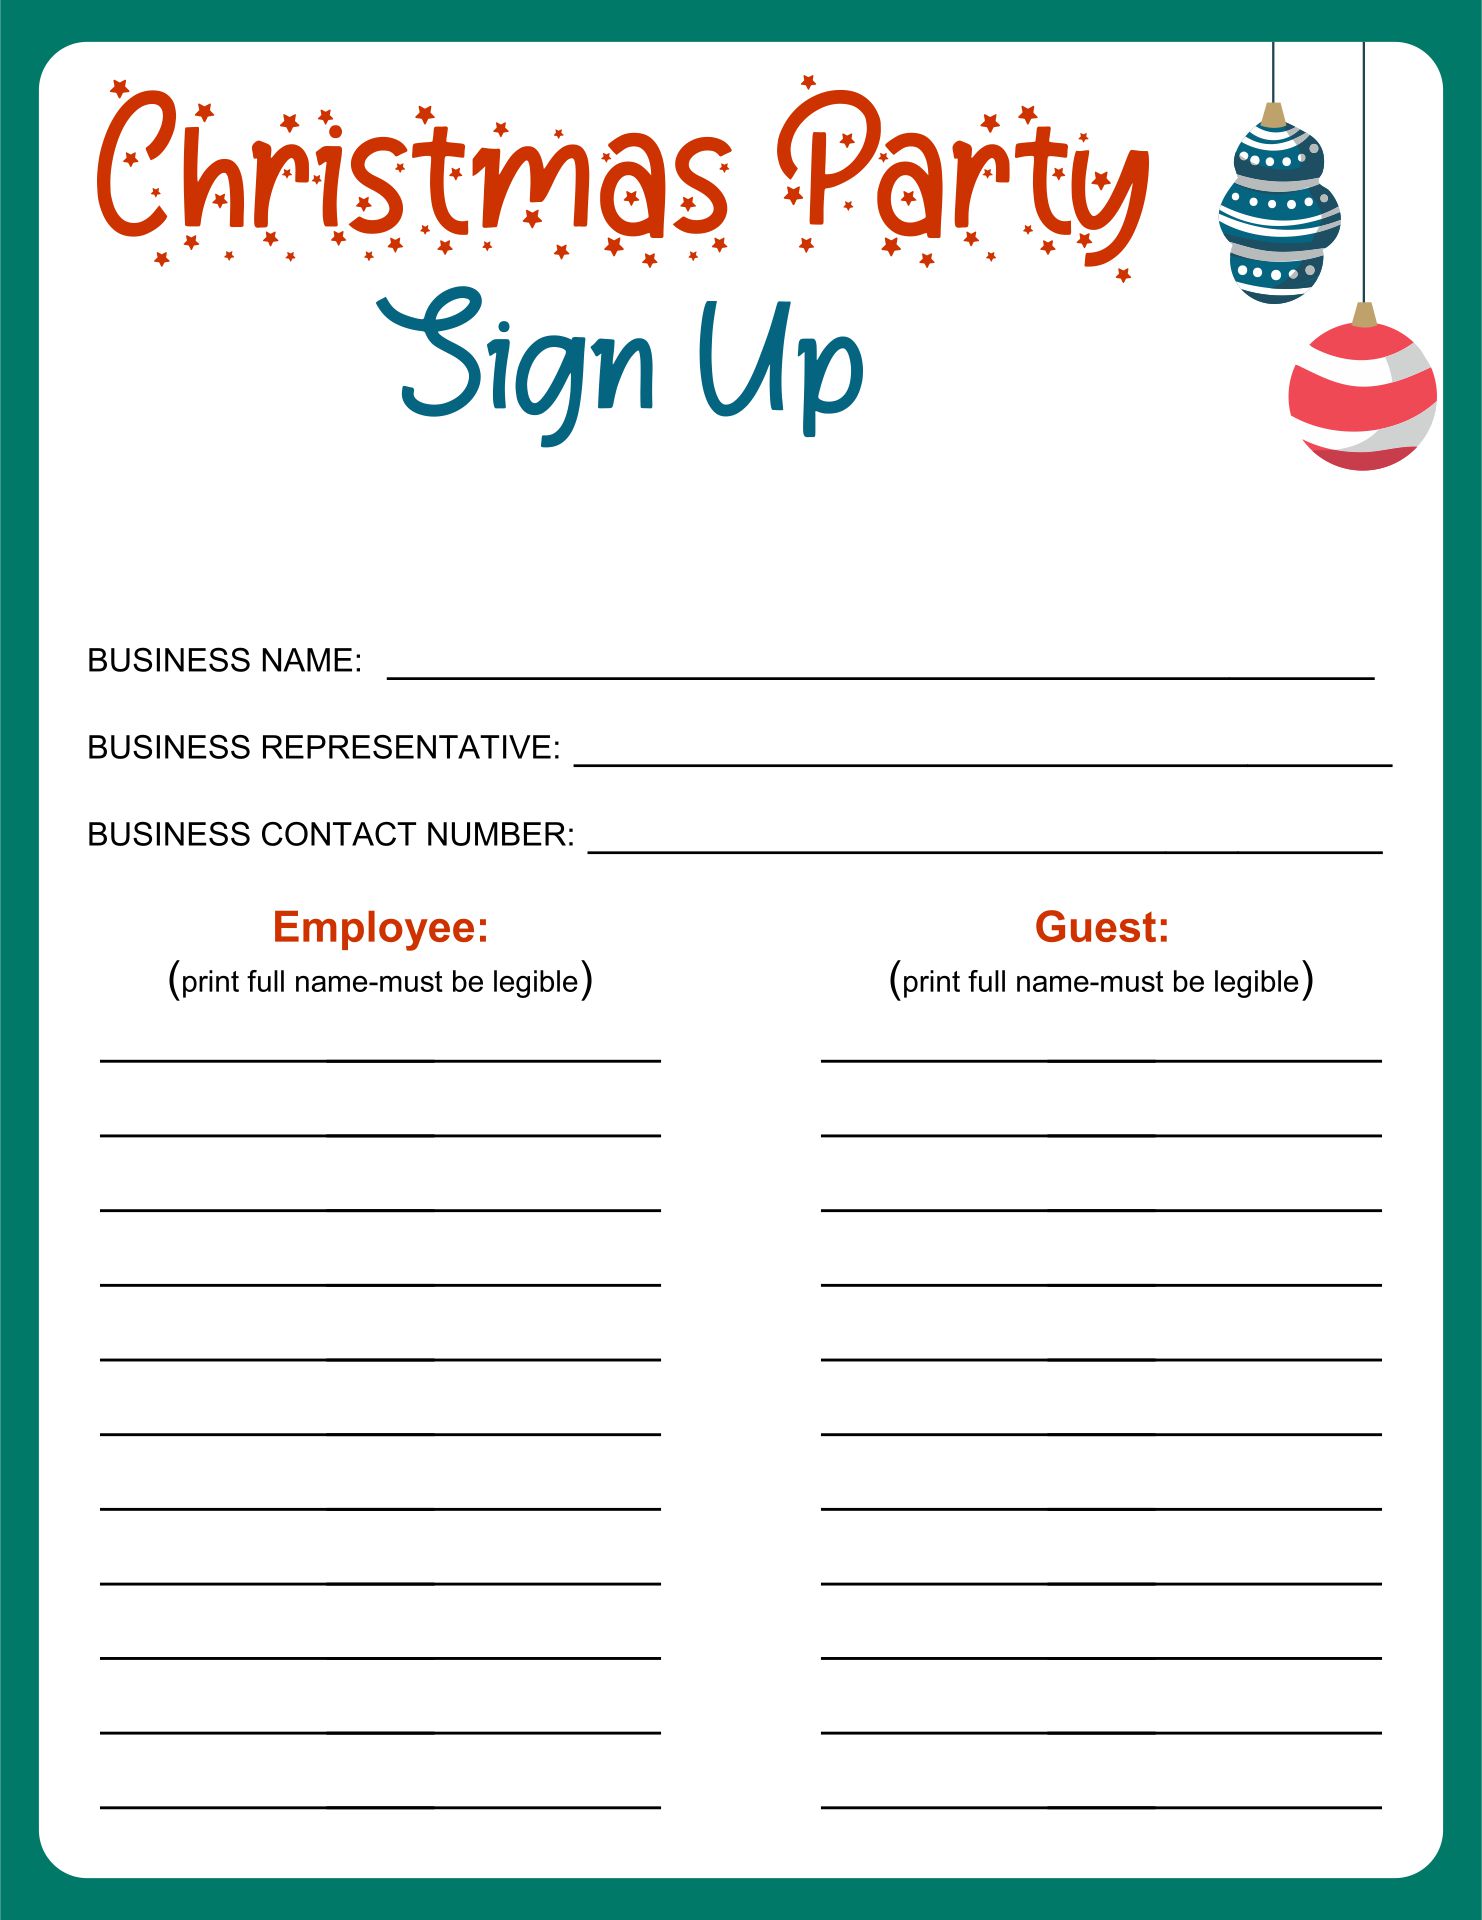 Free Printable Christmas Sign Up Sheet Template